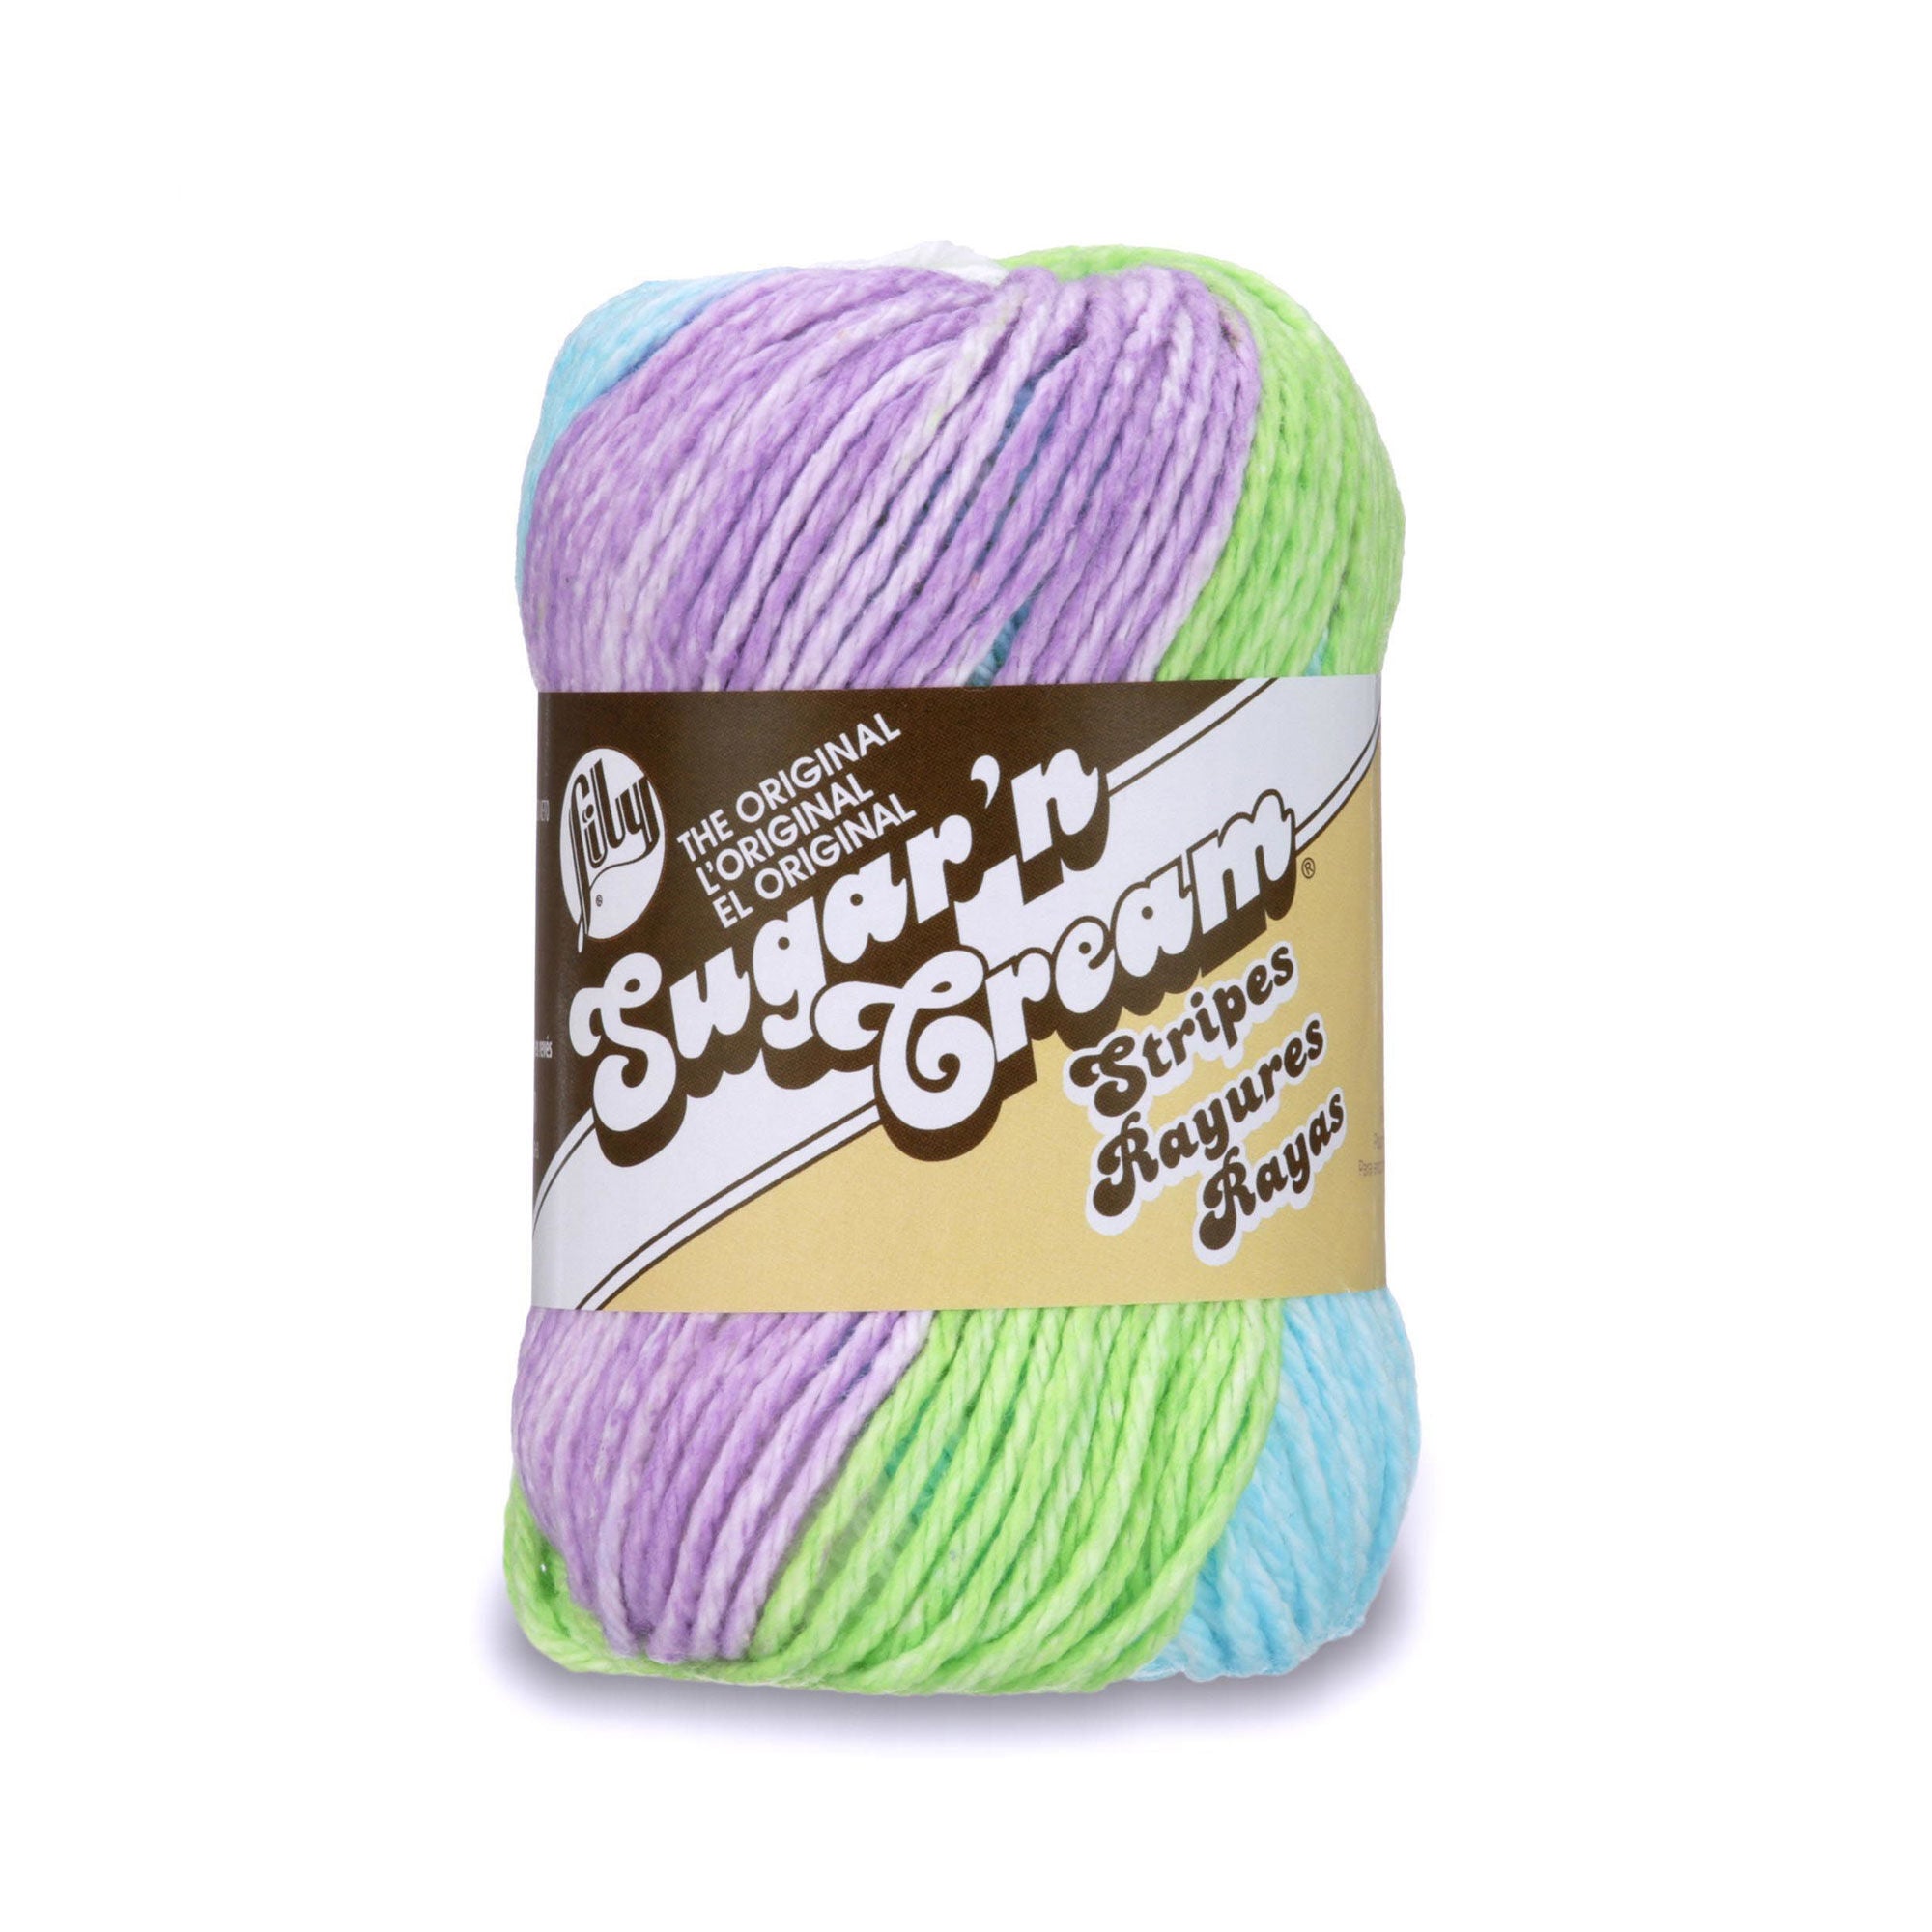 Lily The Original Sugar 'N Cream Yarn Stripes 102021 2 oz – Good's